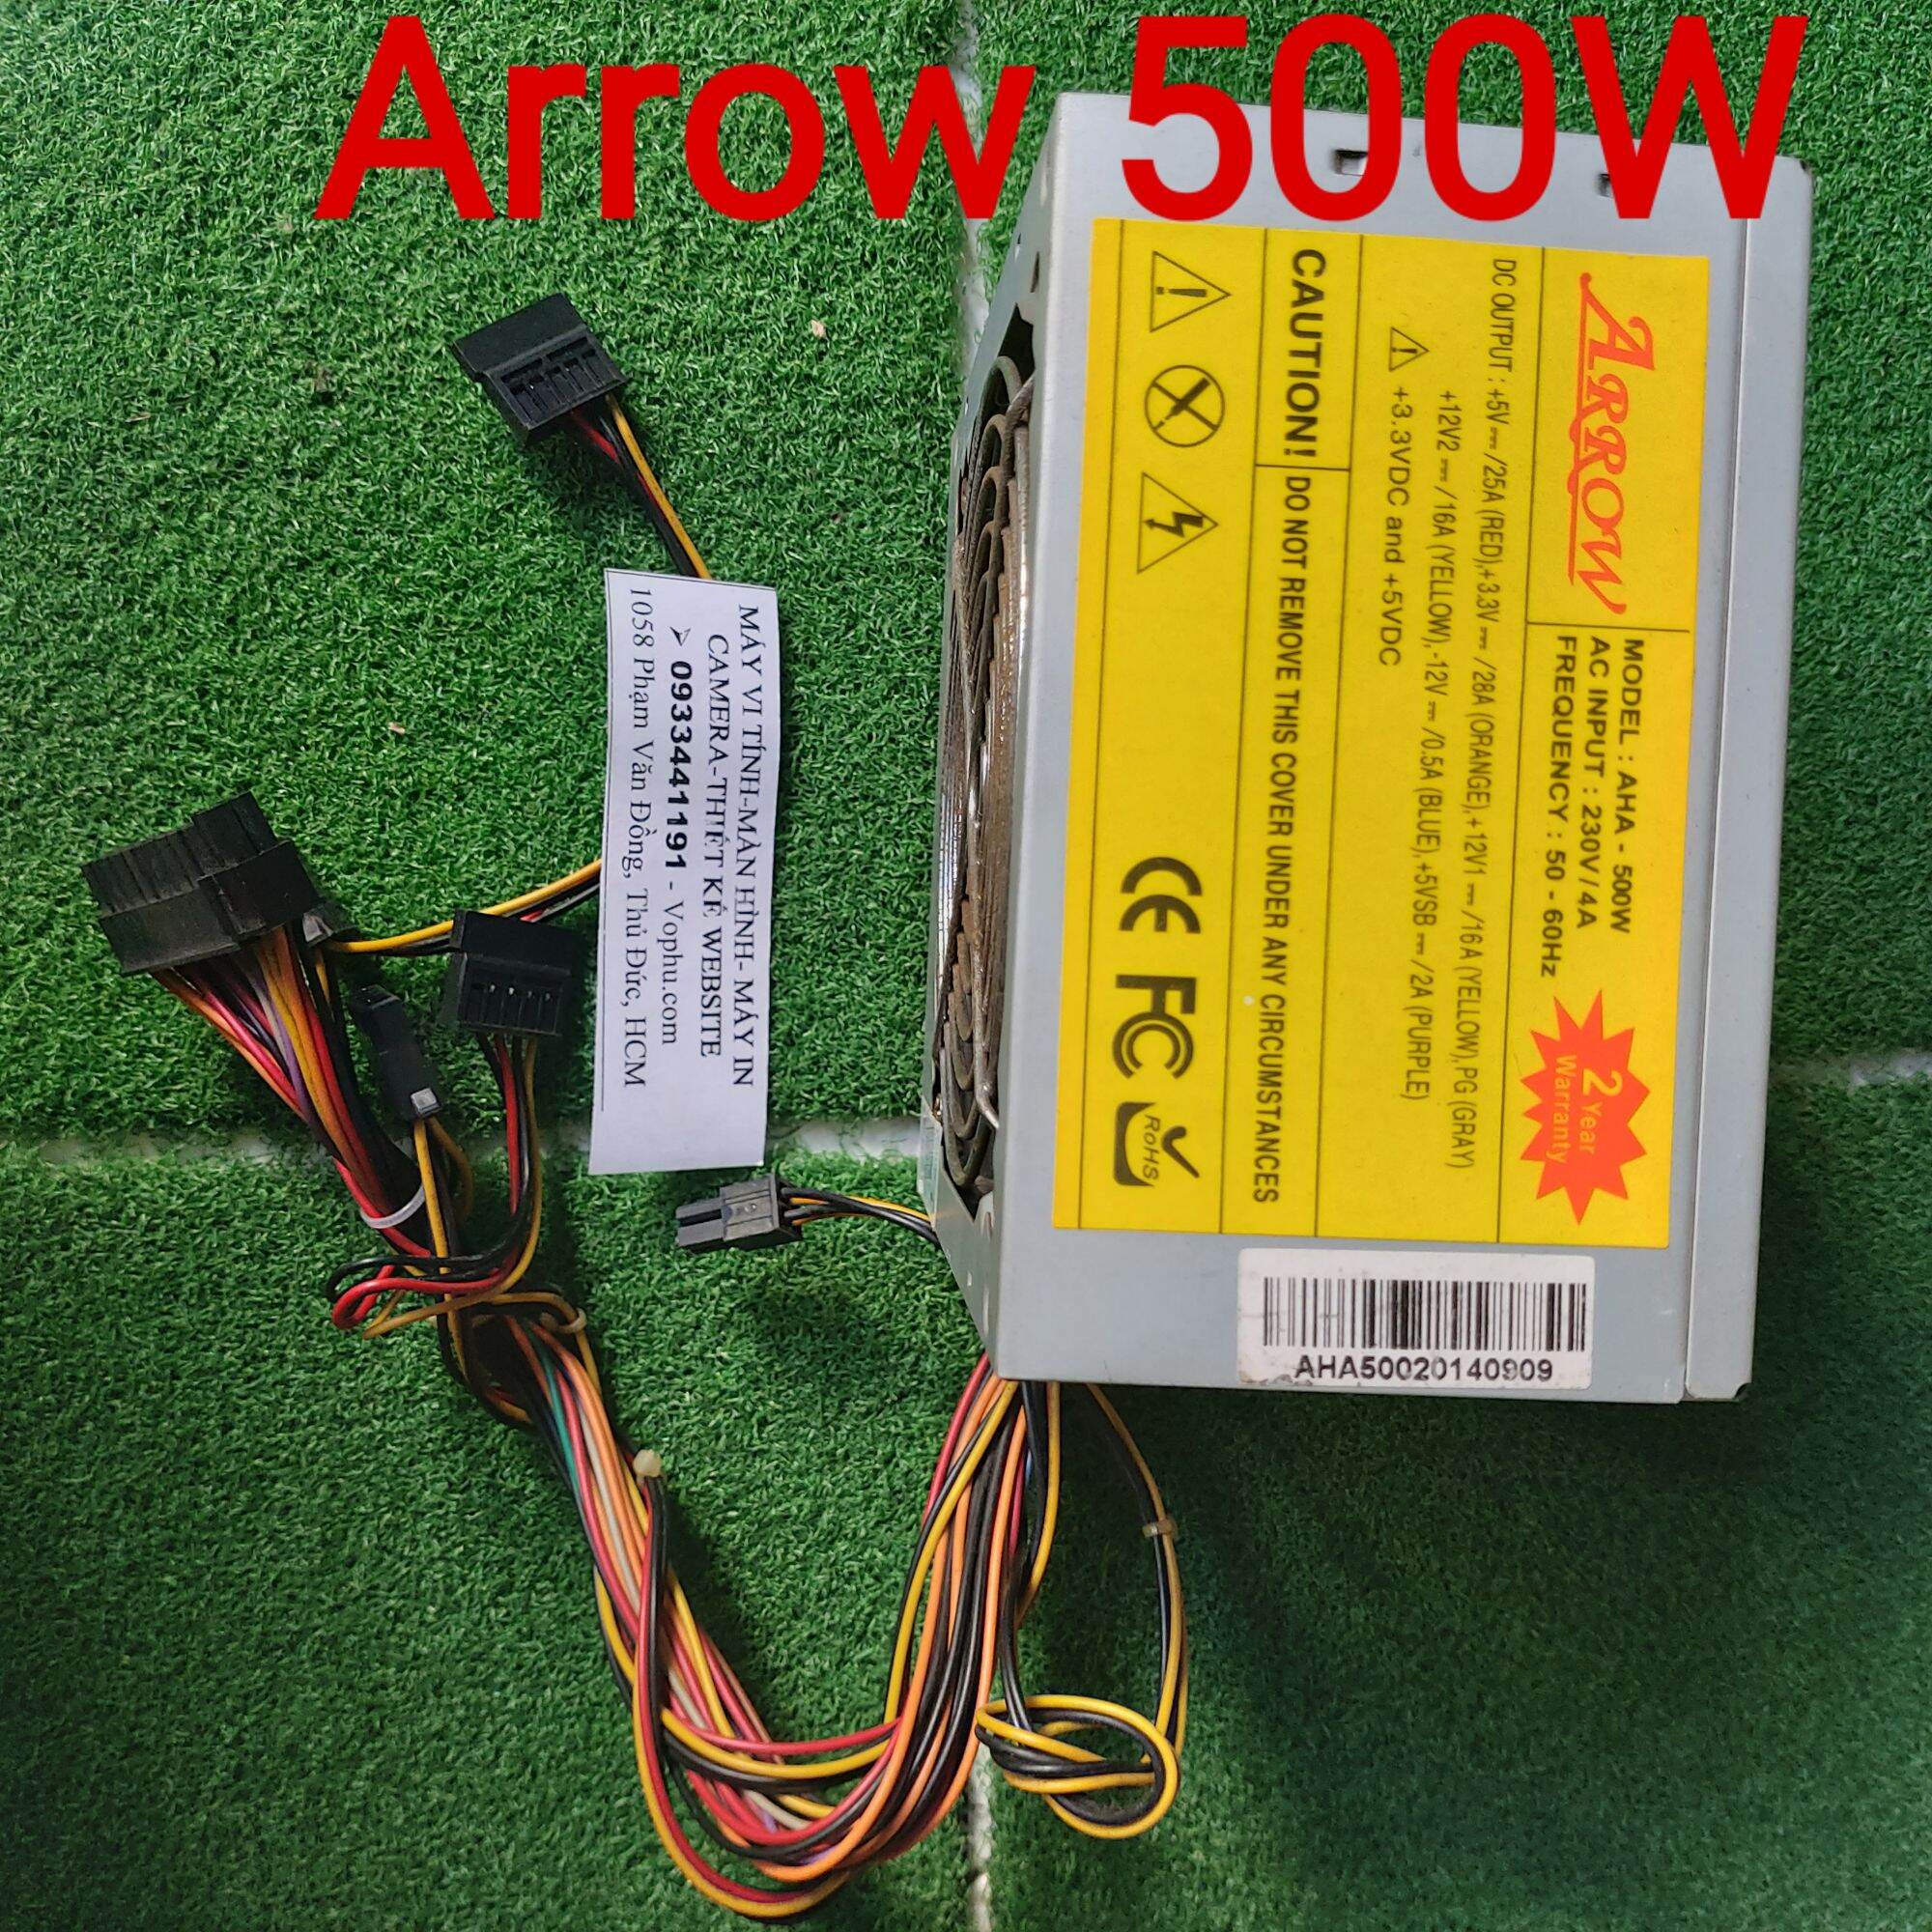 Nguồn PC Arrow 500W hàng tháo máy đã kiểm QC good thumbnail